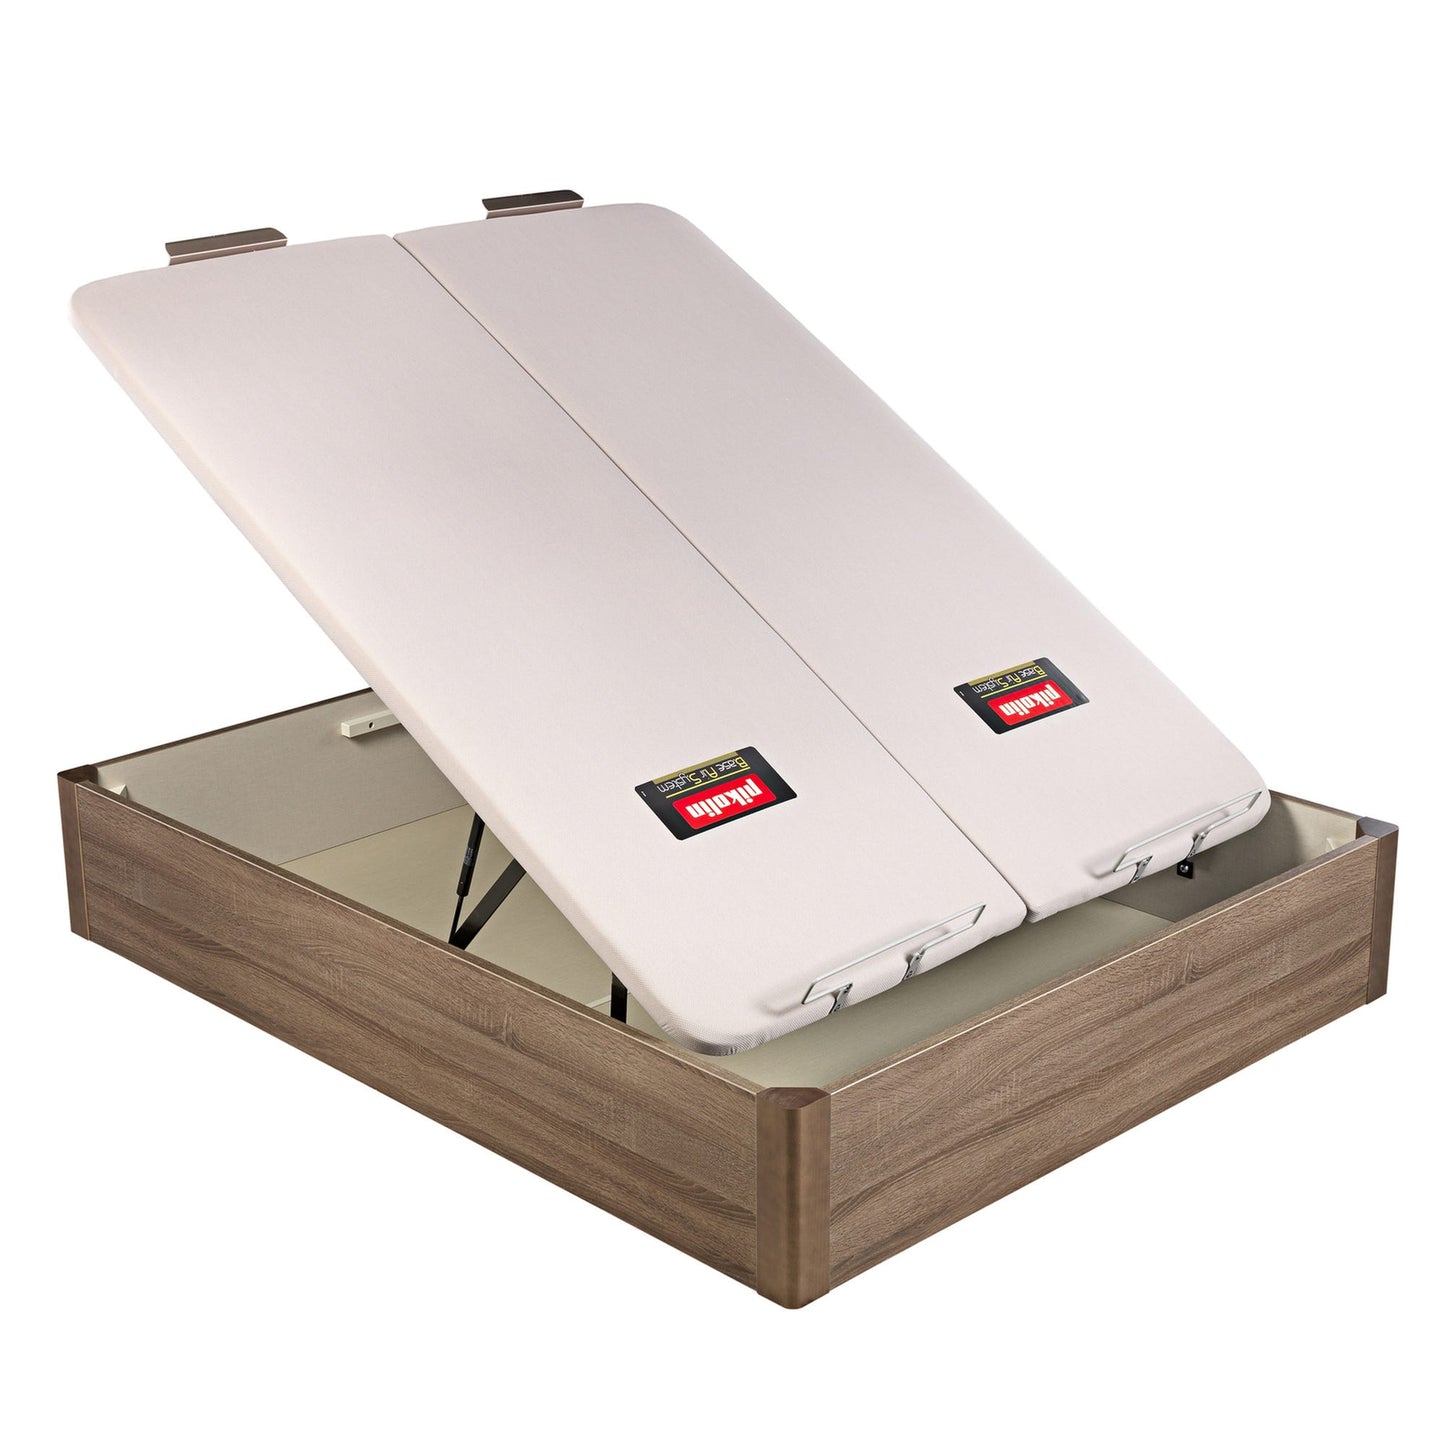 Canapé abatible de madera de tapa doble de color roble - DESIGN - 160x210